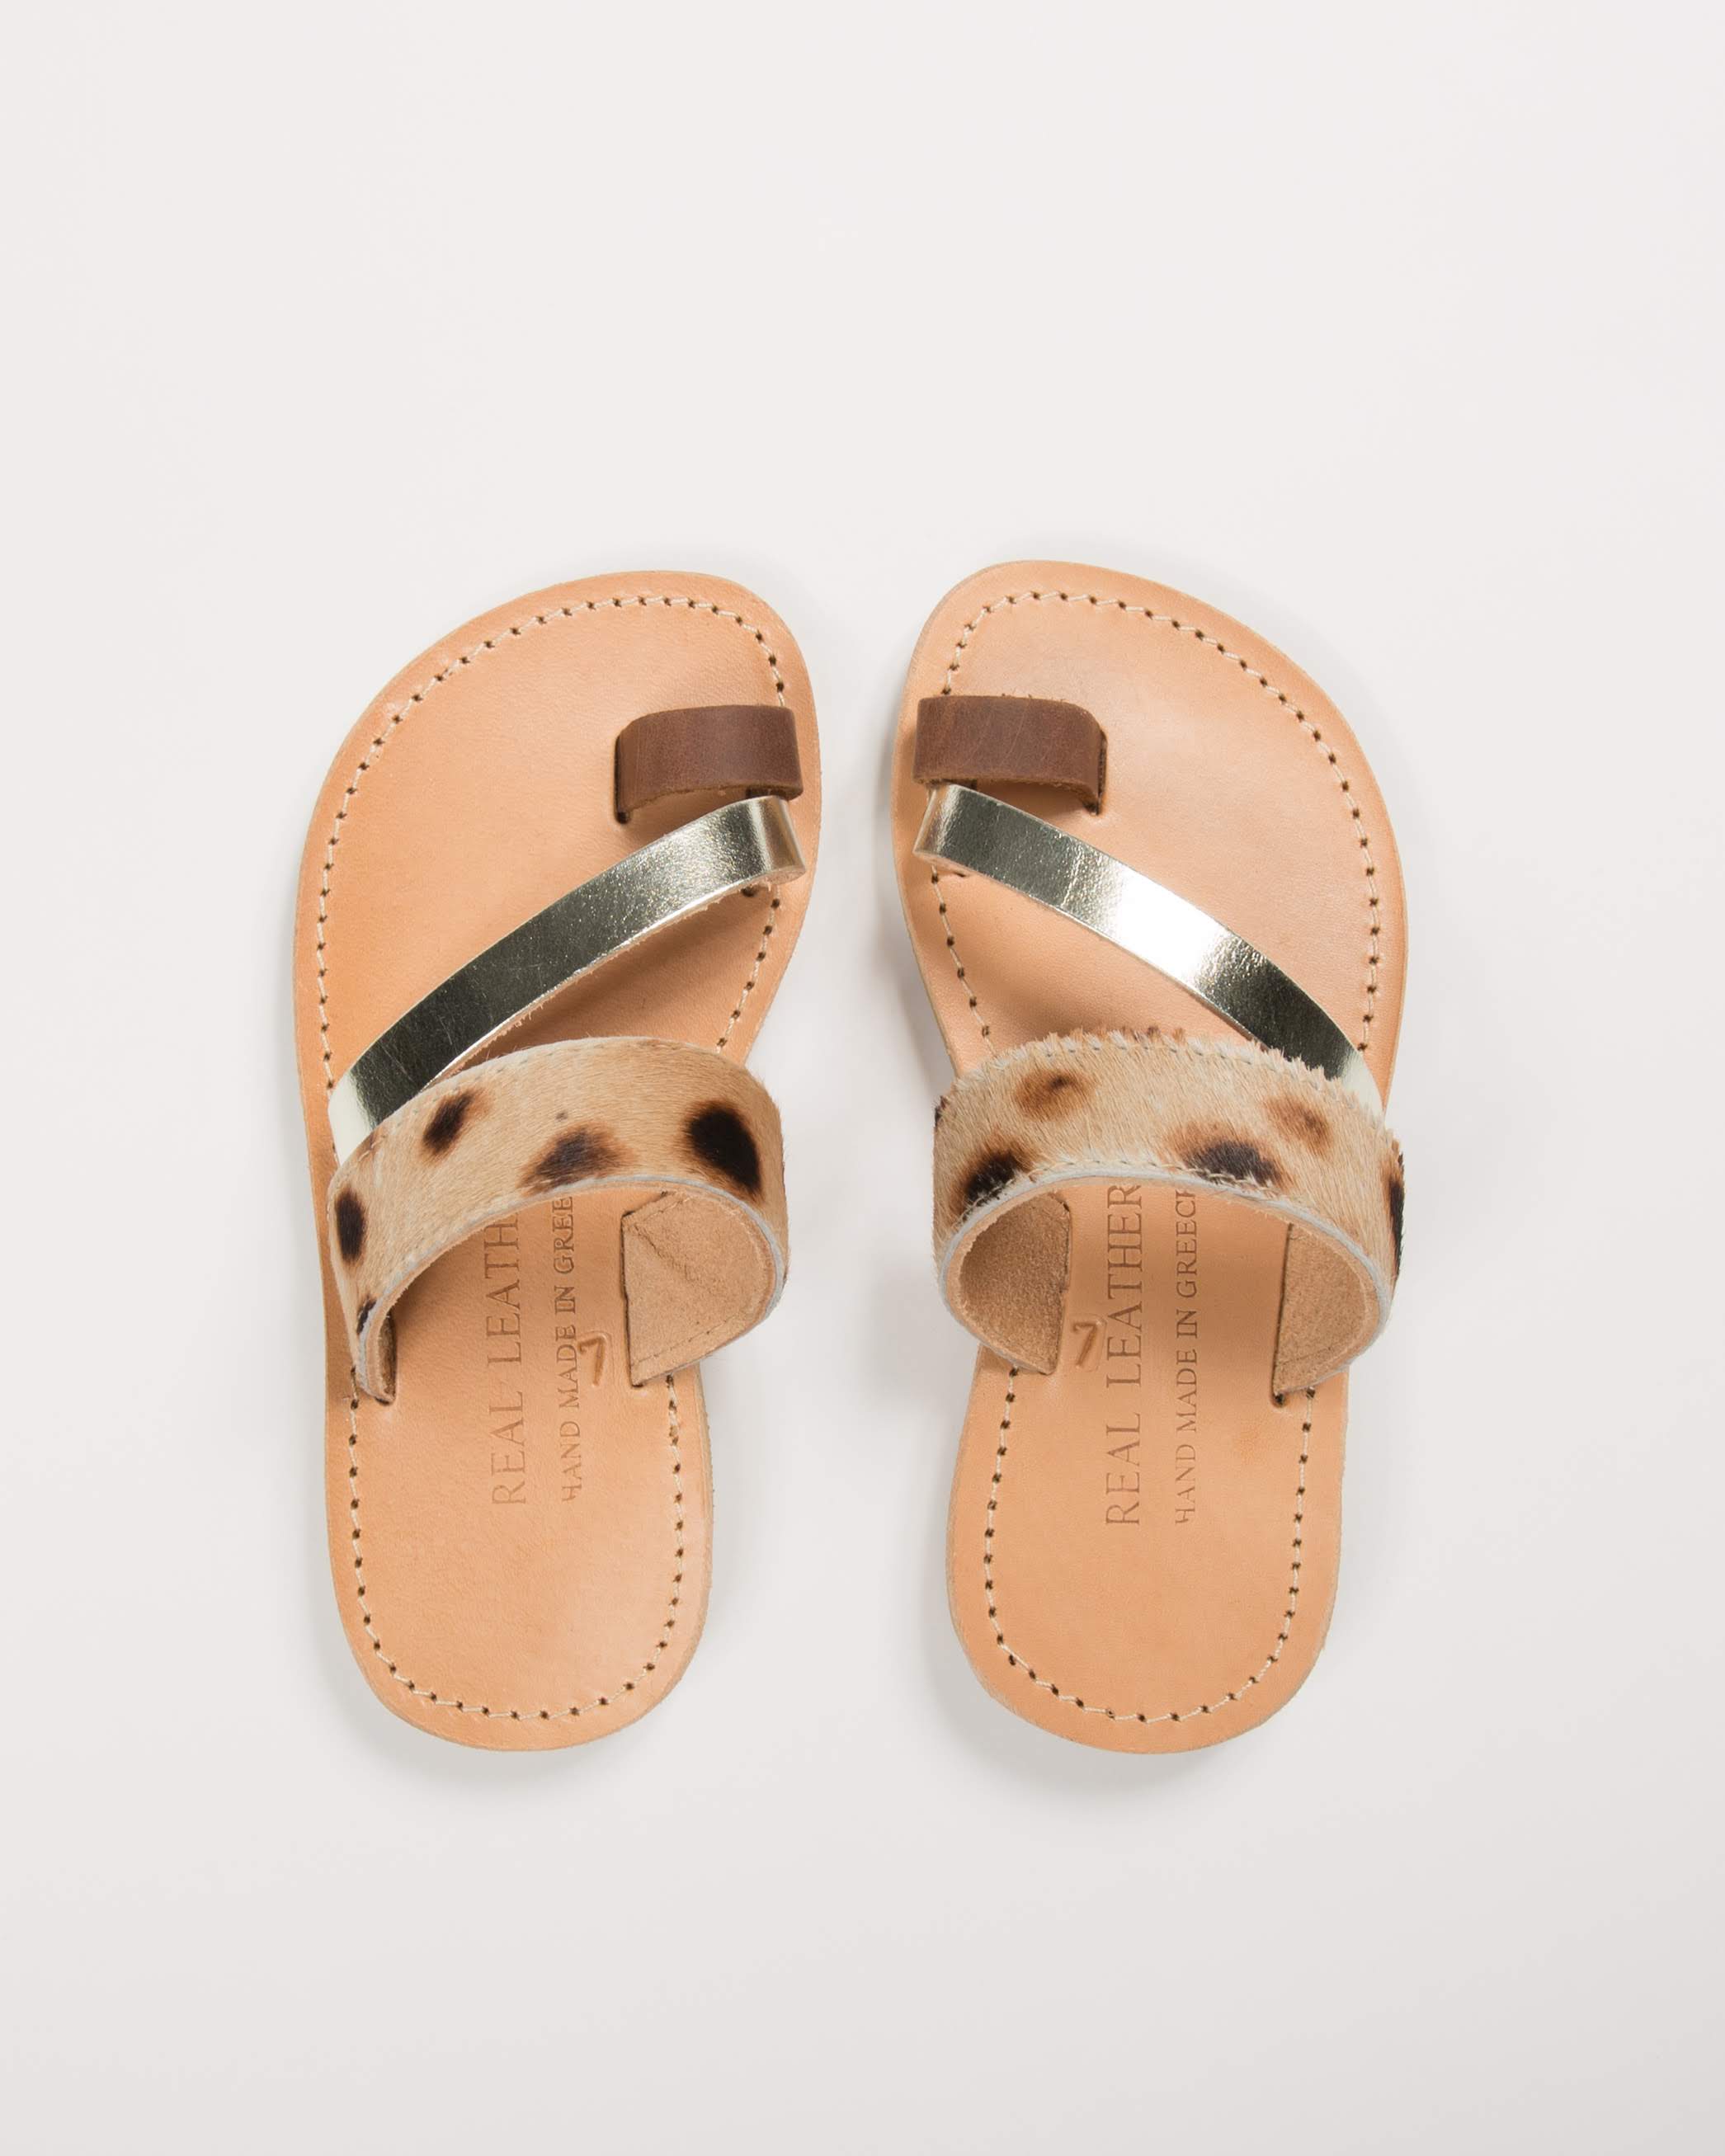 Animal Print Slip On Sandals for Girls - Kardia